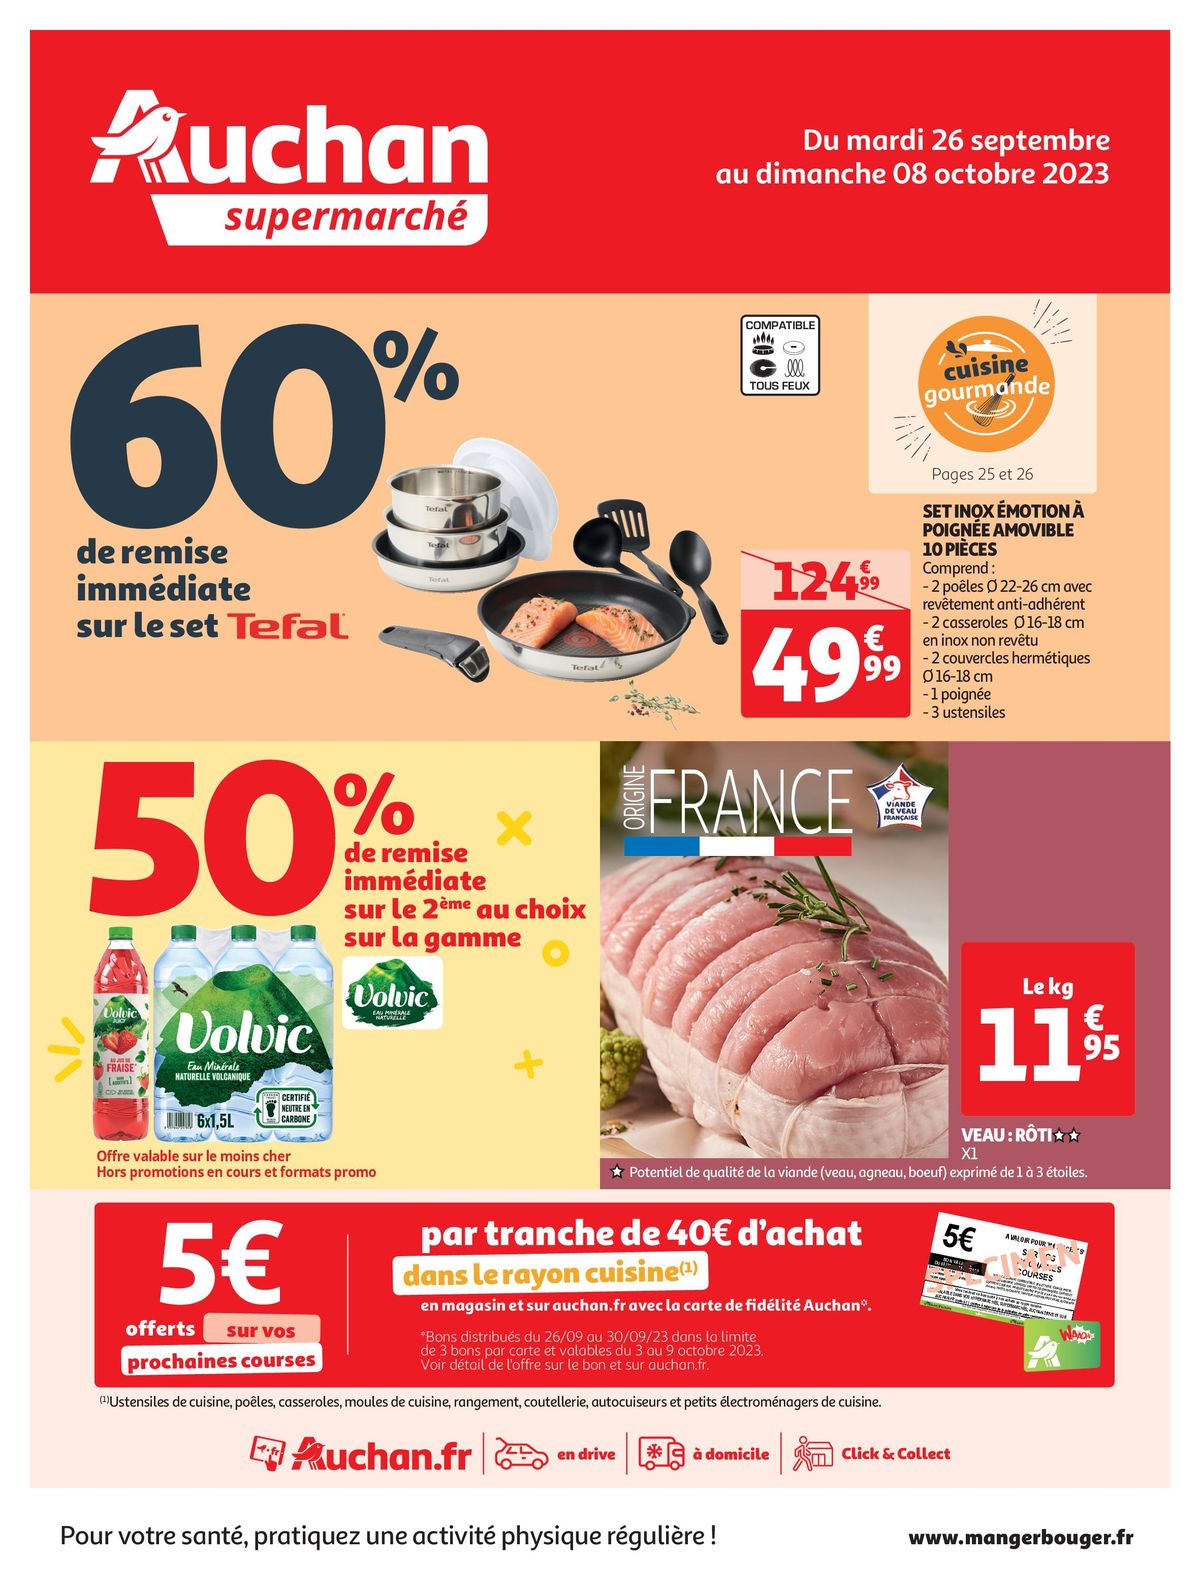 Catalogue Spécial Cuisine Gourmane dans votre supermarché, page 00001